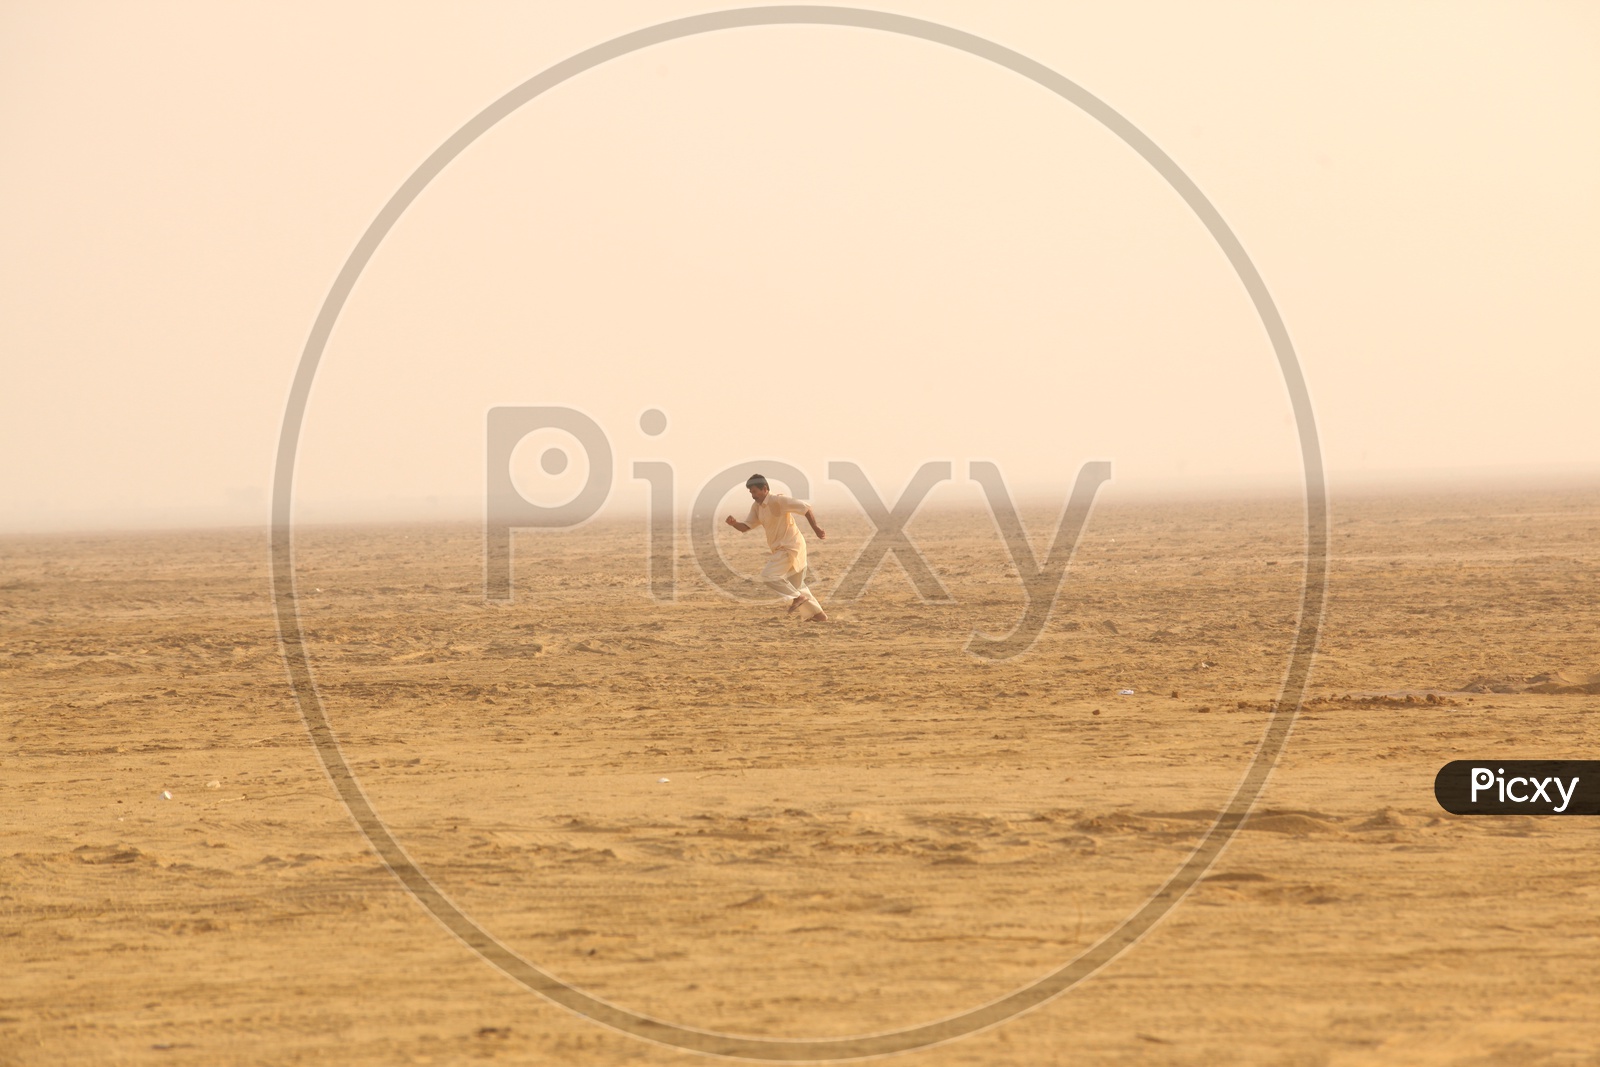 Indian Man running in a Desert